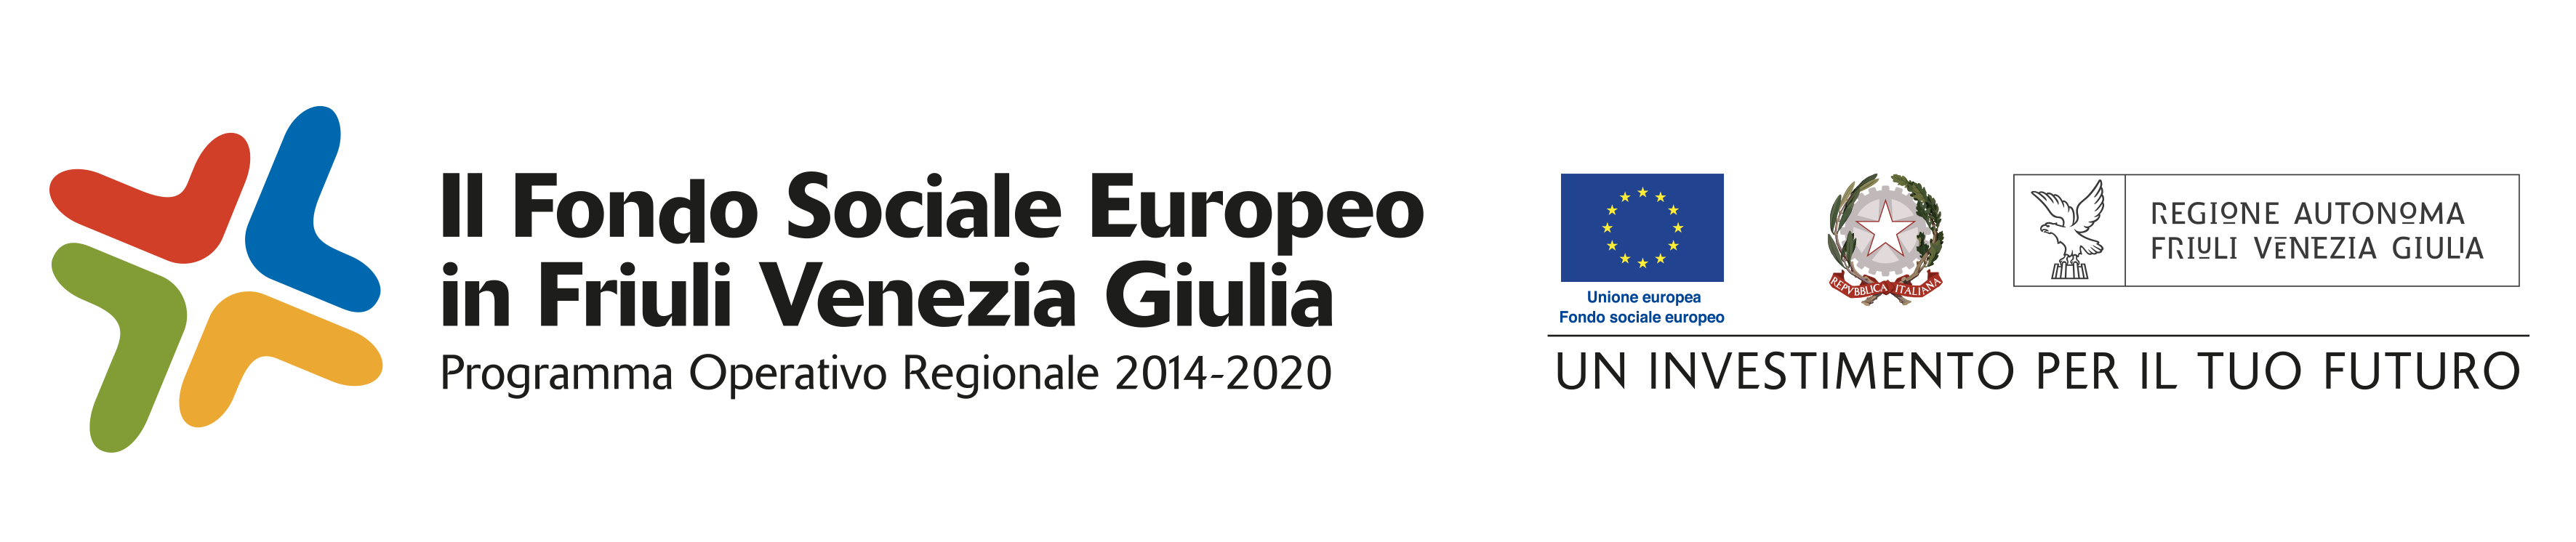 Logos POR FSE Friuli-Venezia Giulia, EU, Italian Republic, Autonomous Region Friuli-Venezia Giulia